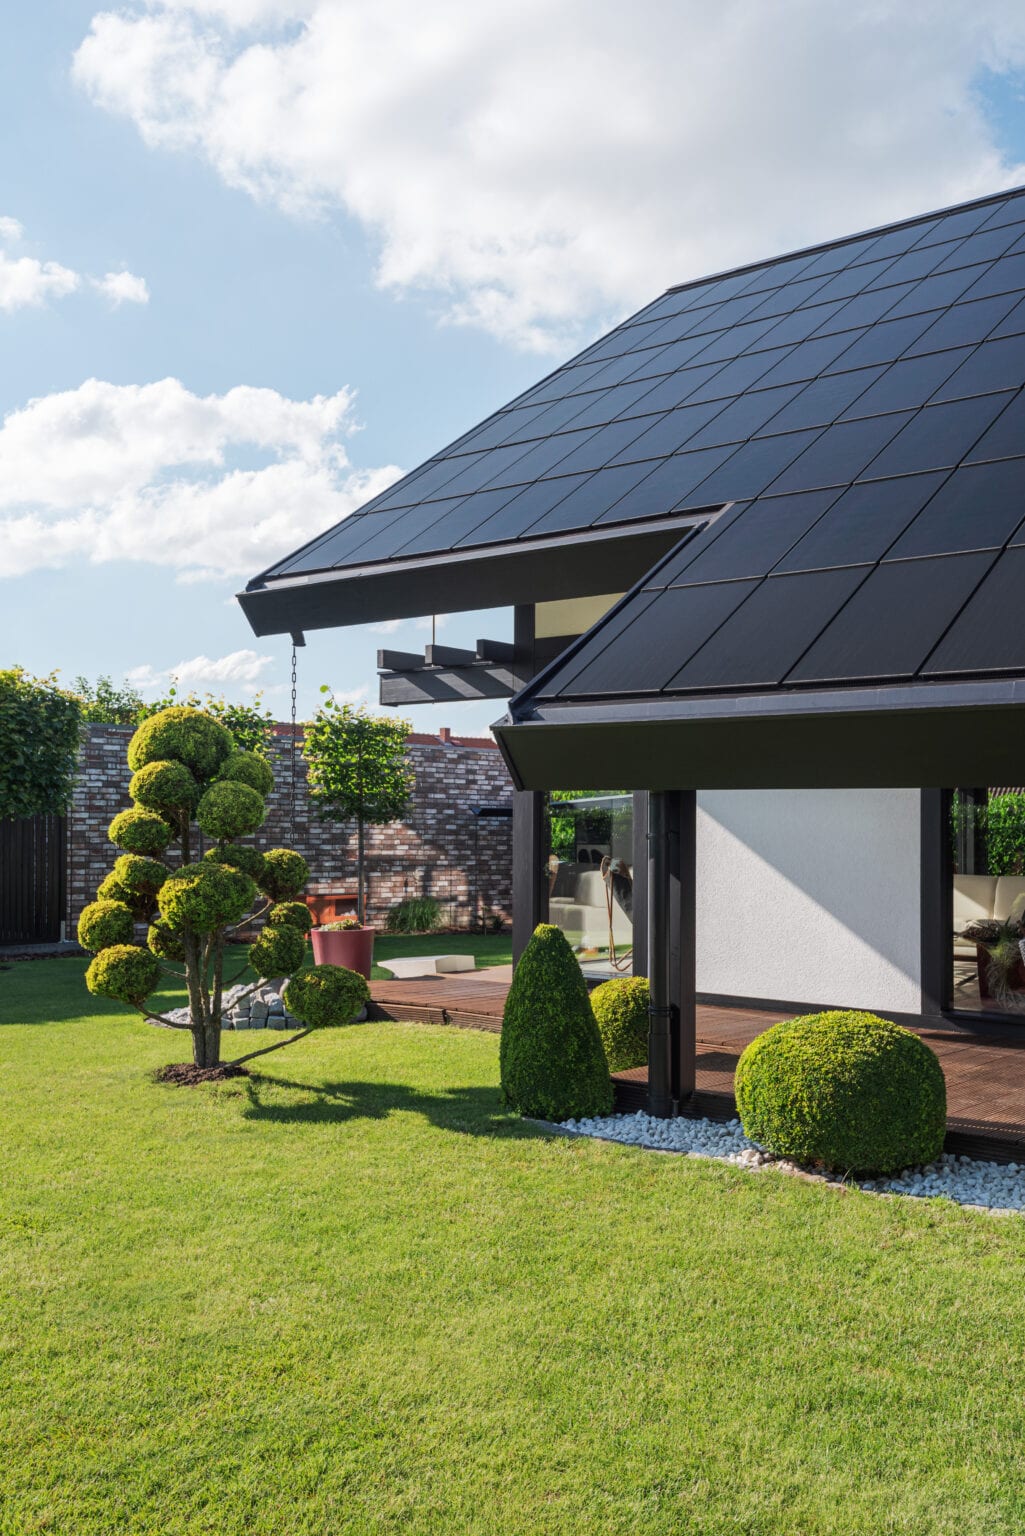 Detailaufnahme Ennogie-Solardach in Nienburg inklusive Terrasse mit Bäumen und Sträuchern im Vordergrund